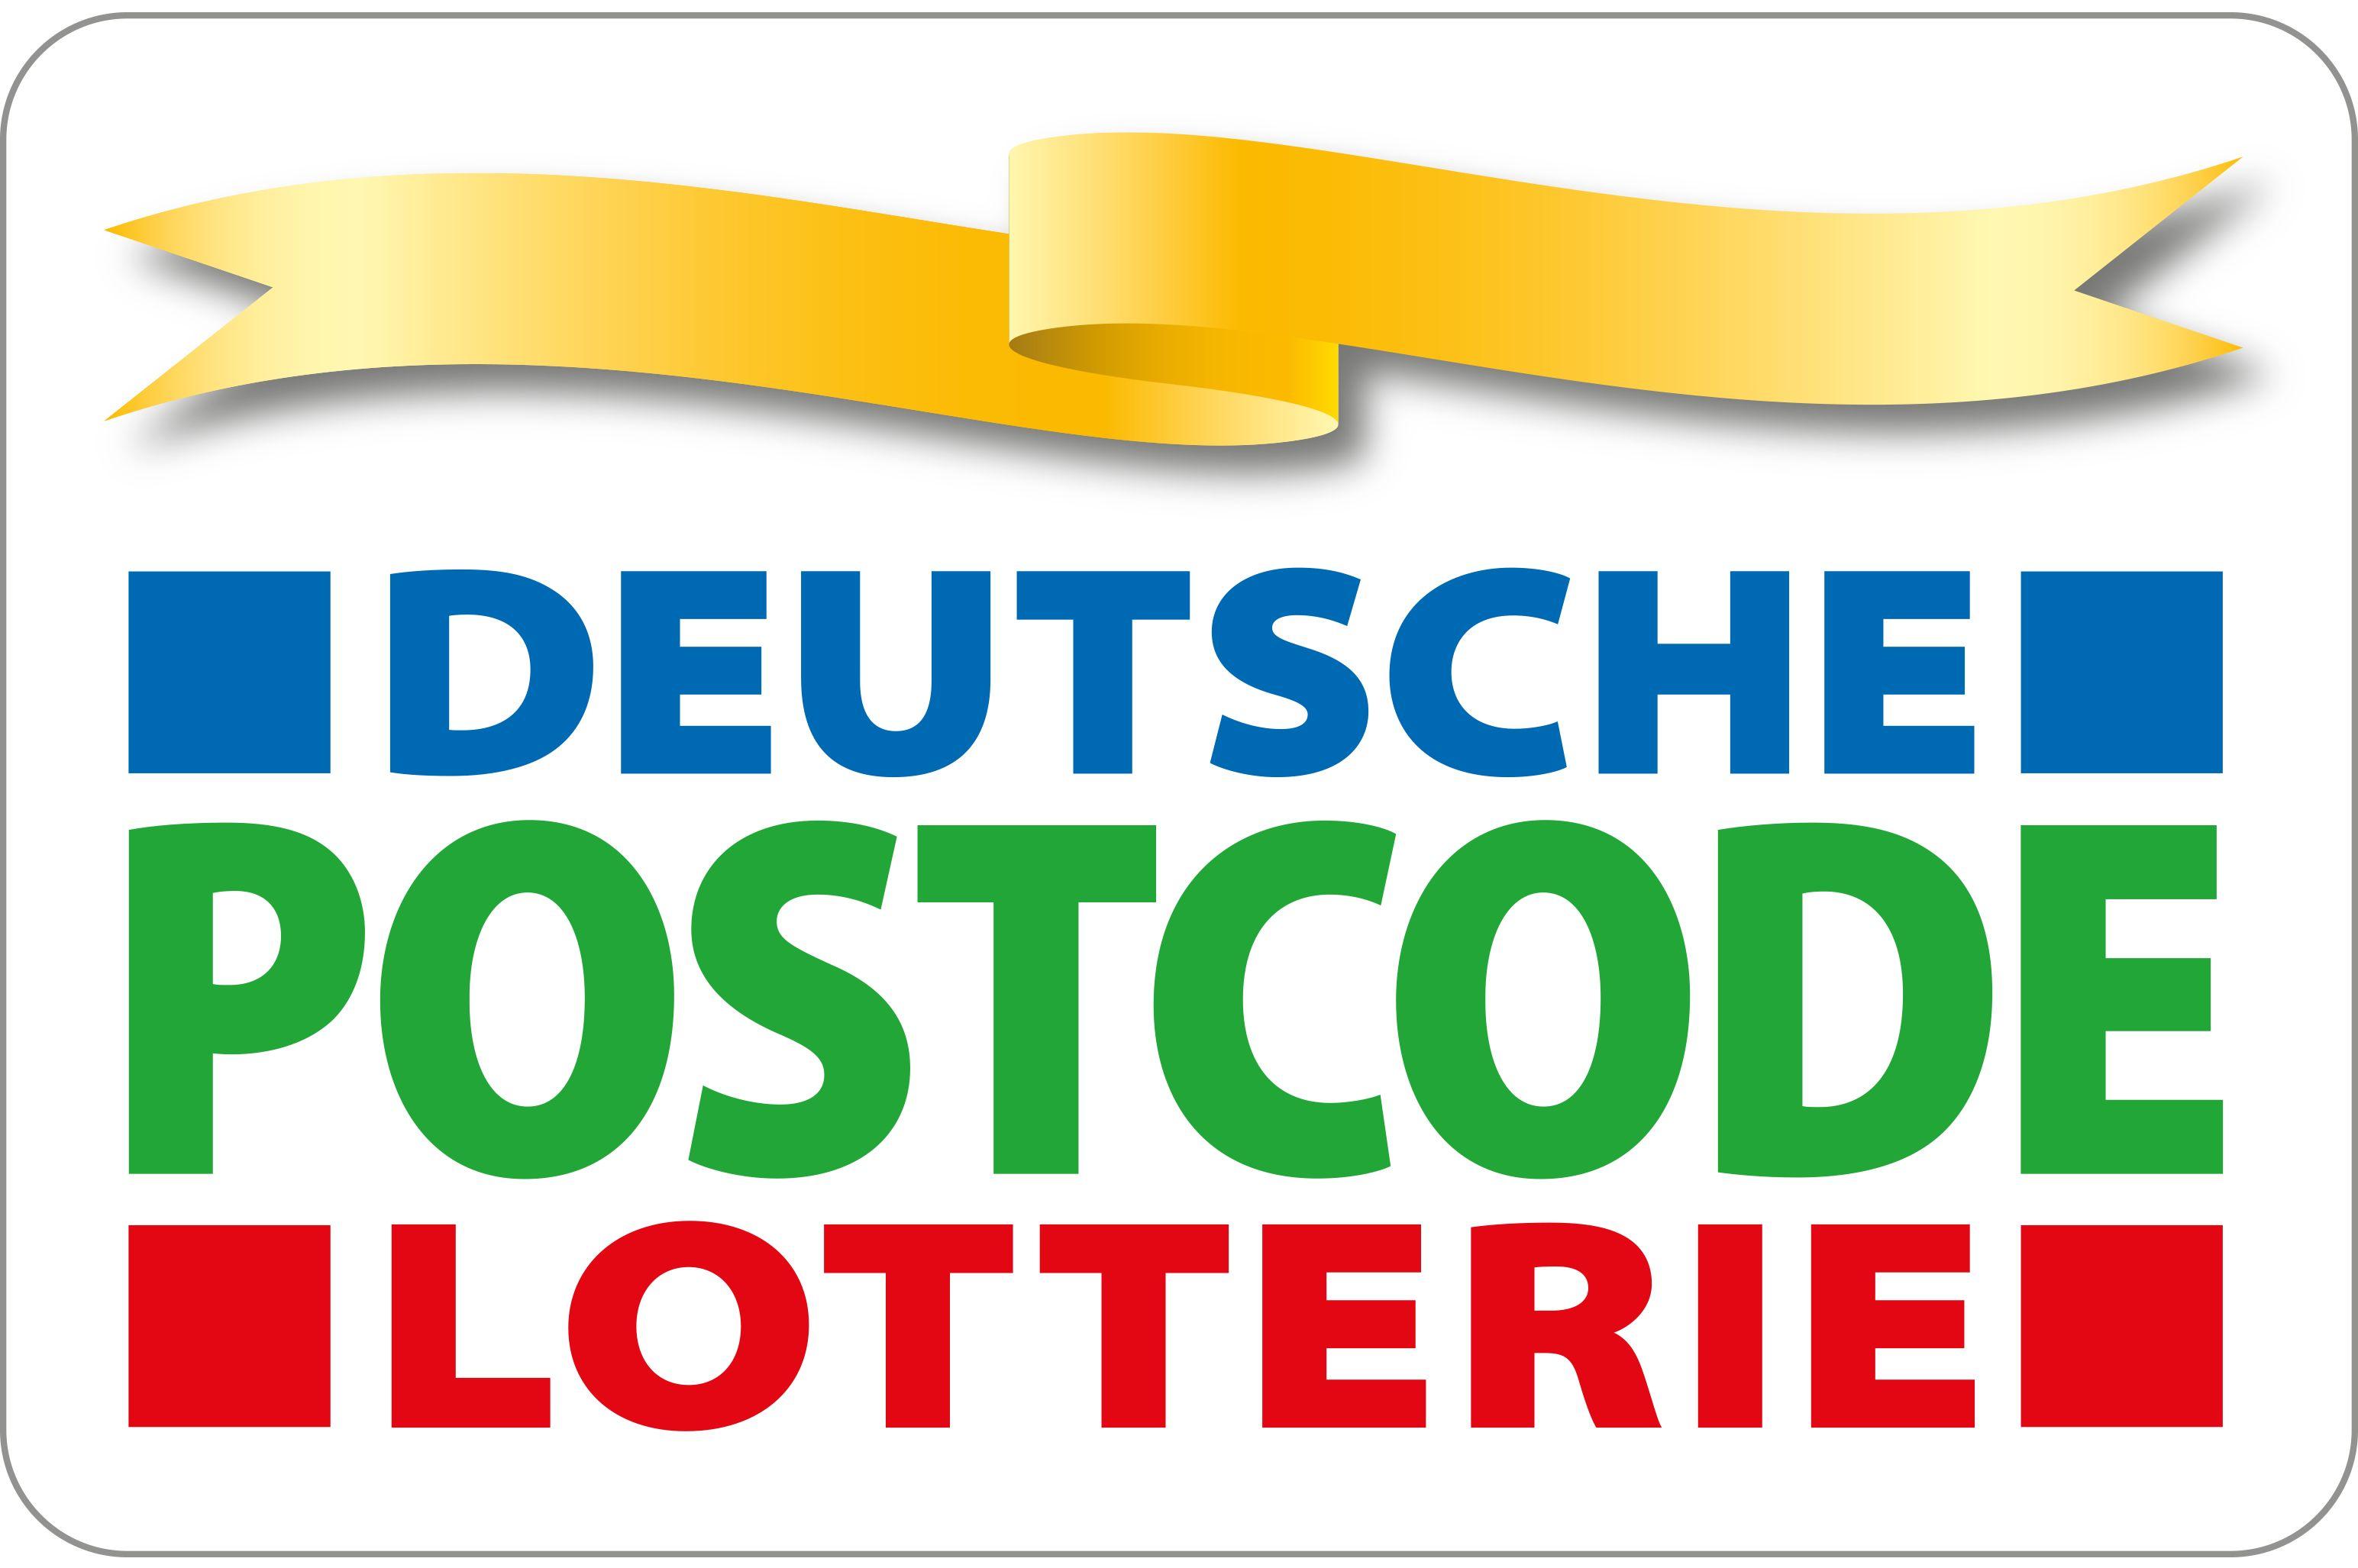 deutsche postcode lotterie